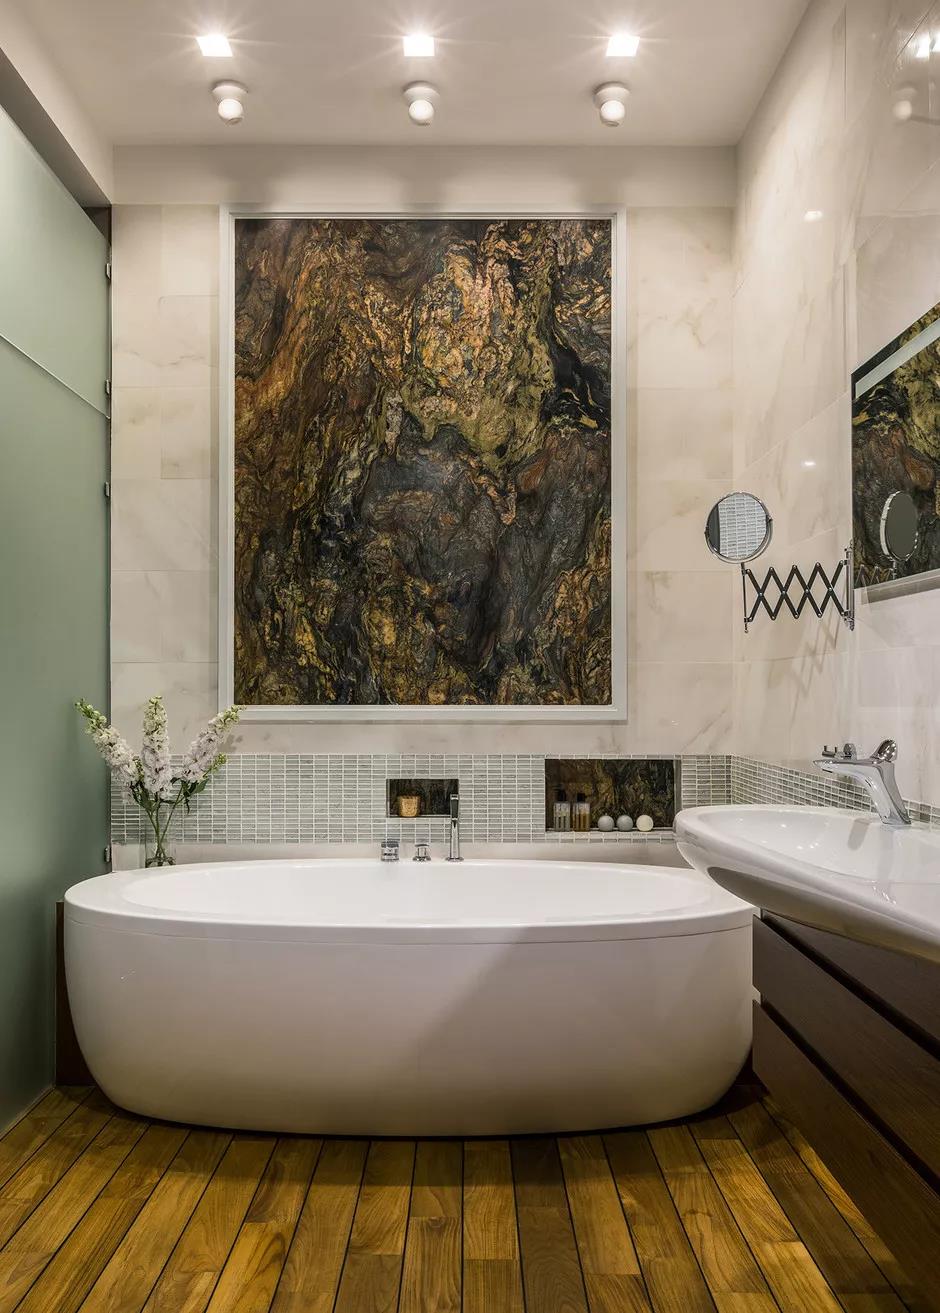 浴室用镶木地板代替瓷砖效果图